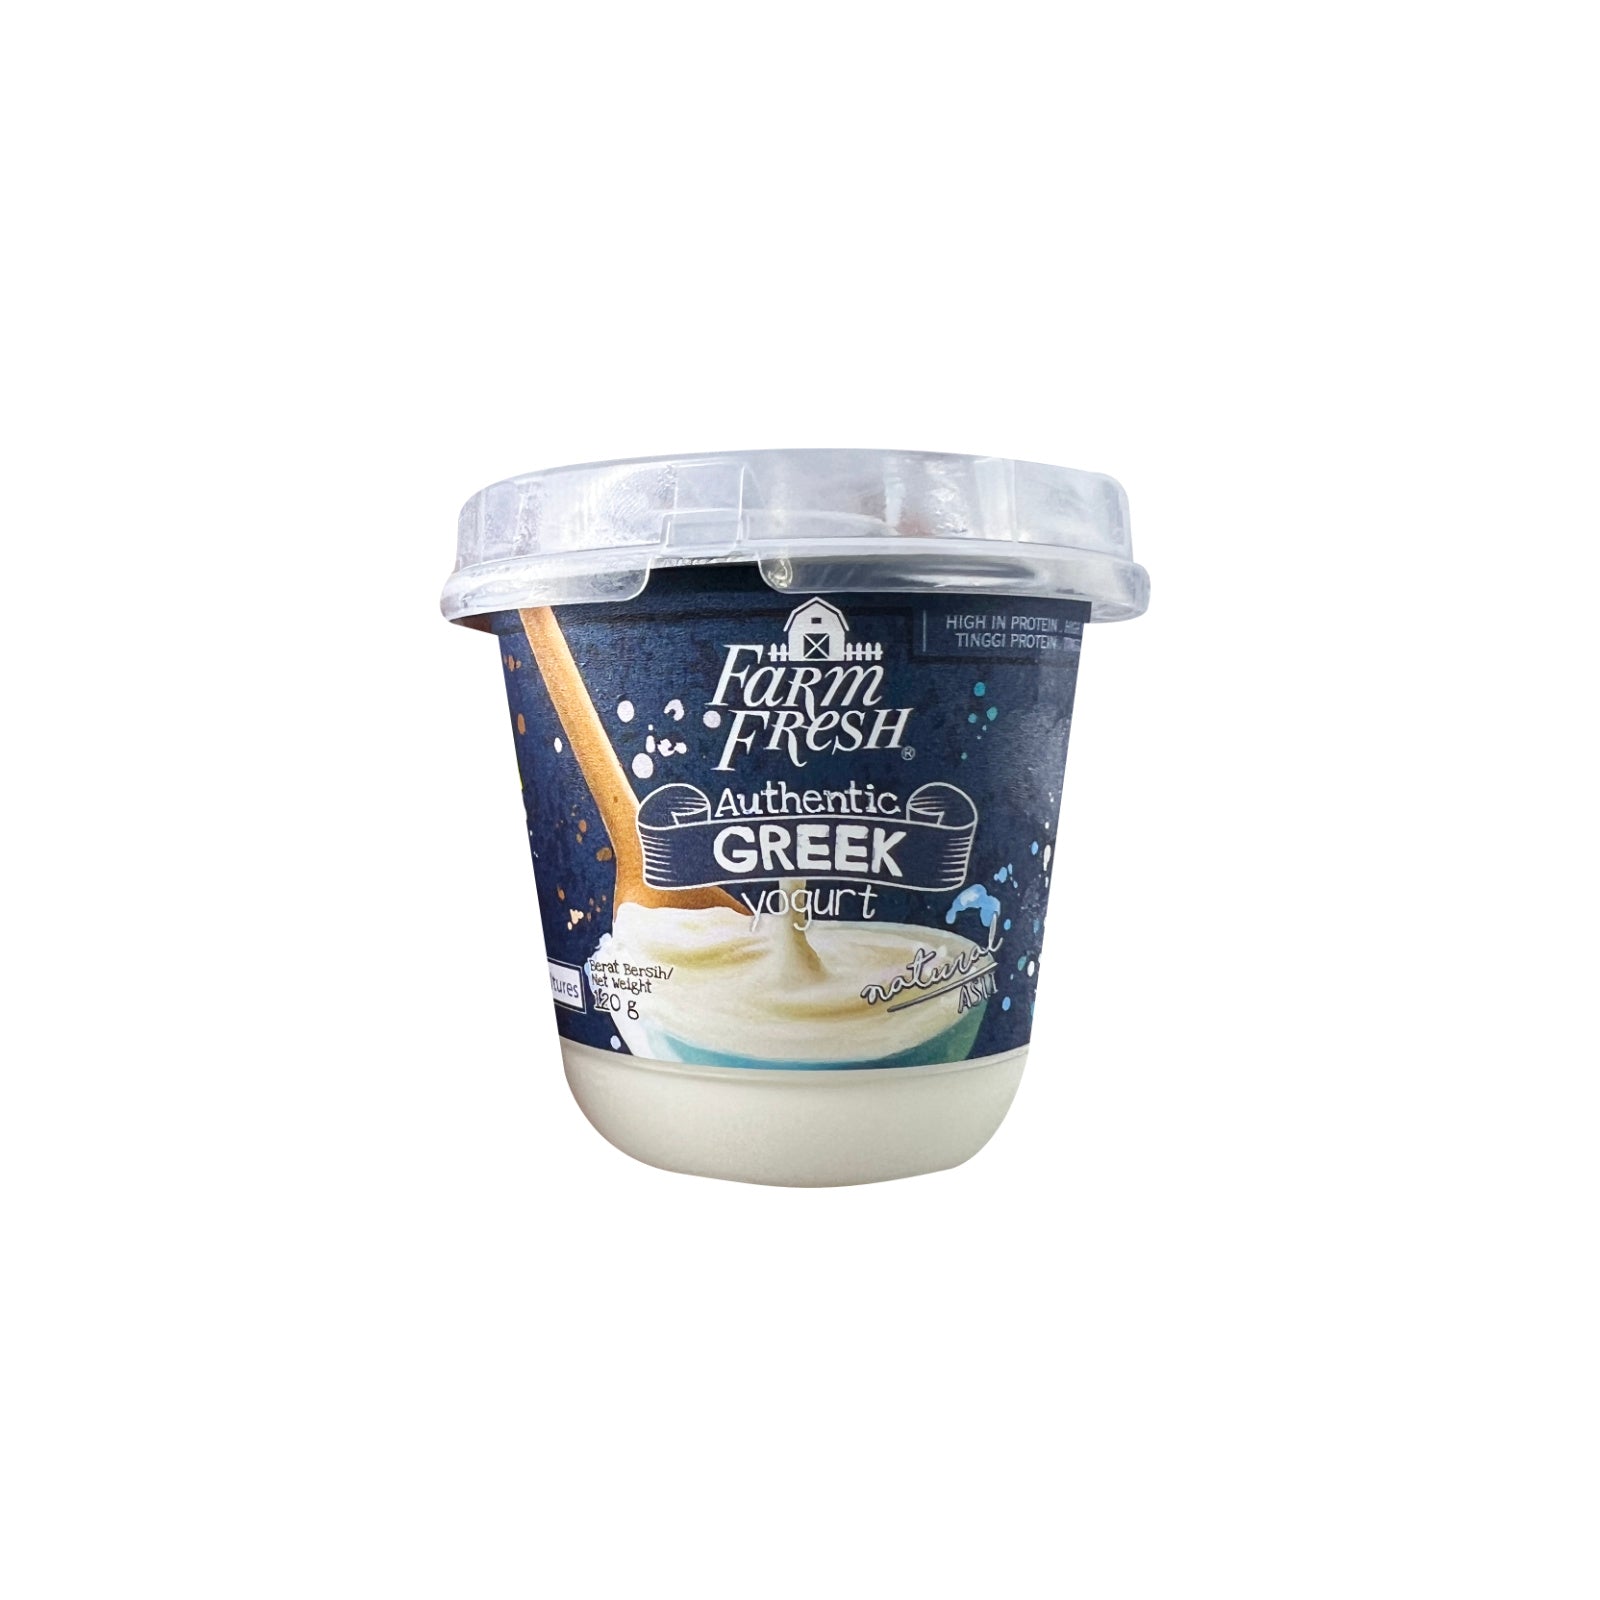 Farm Fresh Authentic Greek Yogurt 470g